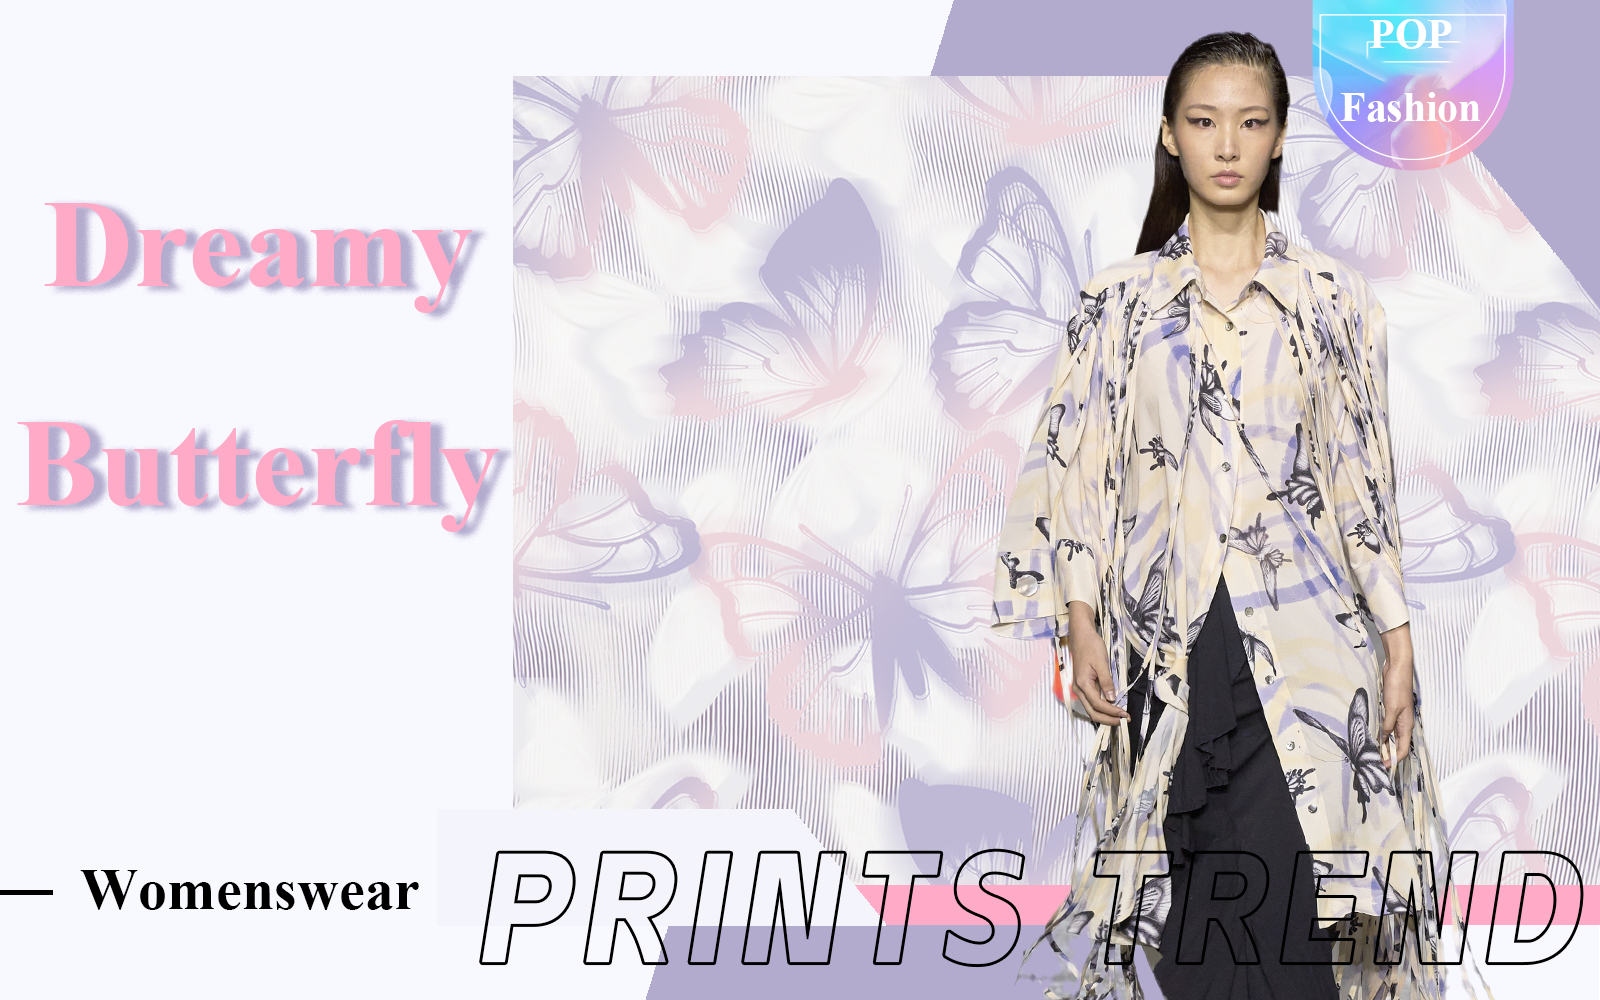 Dreamy Butterfly -- The Pattern Trend for Womenswear